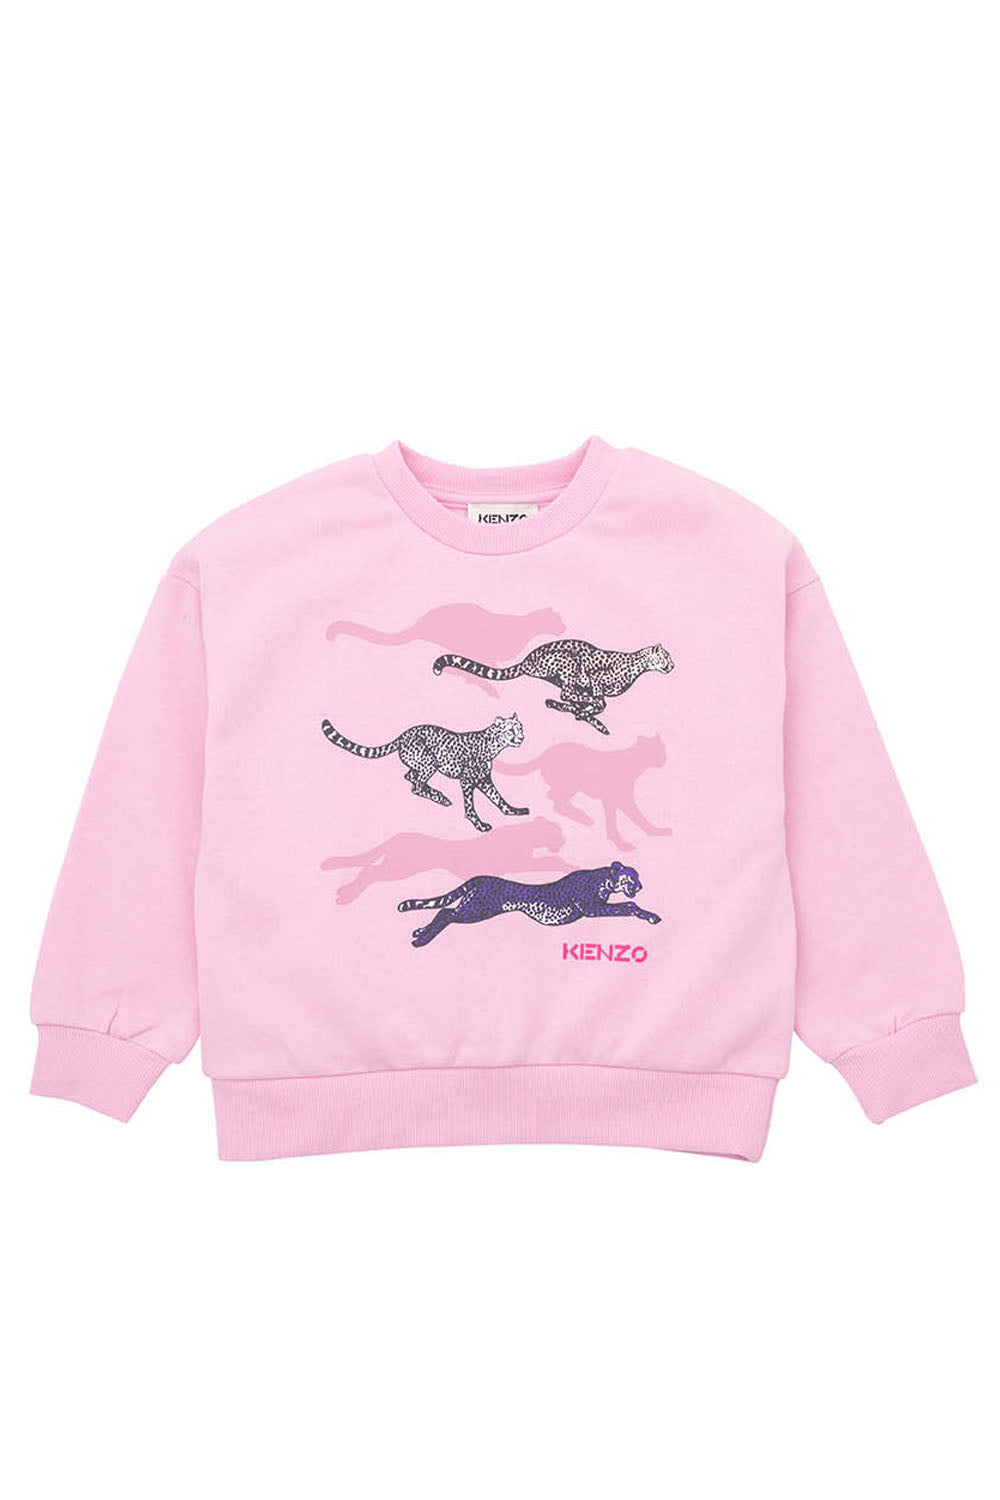 Cheetah print Sweatshirt - Maison7